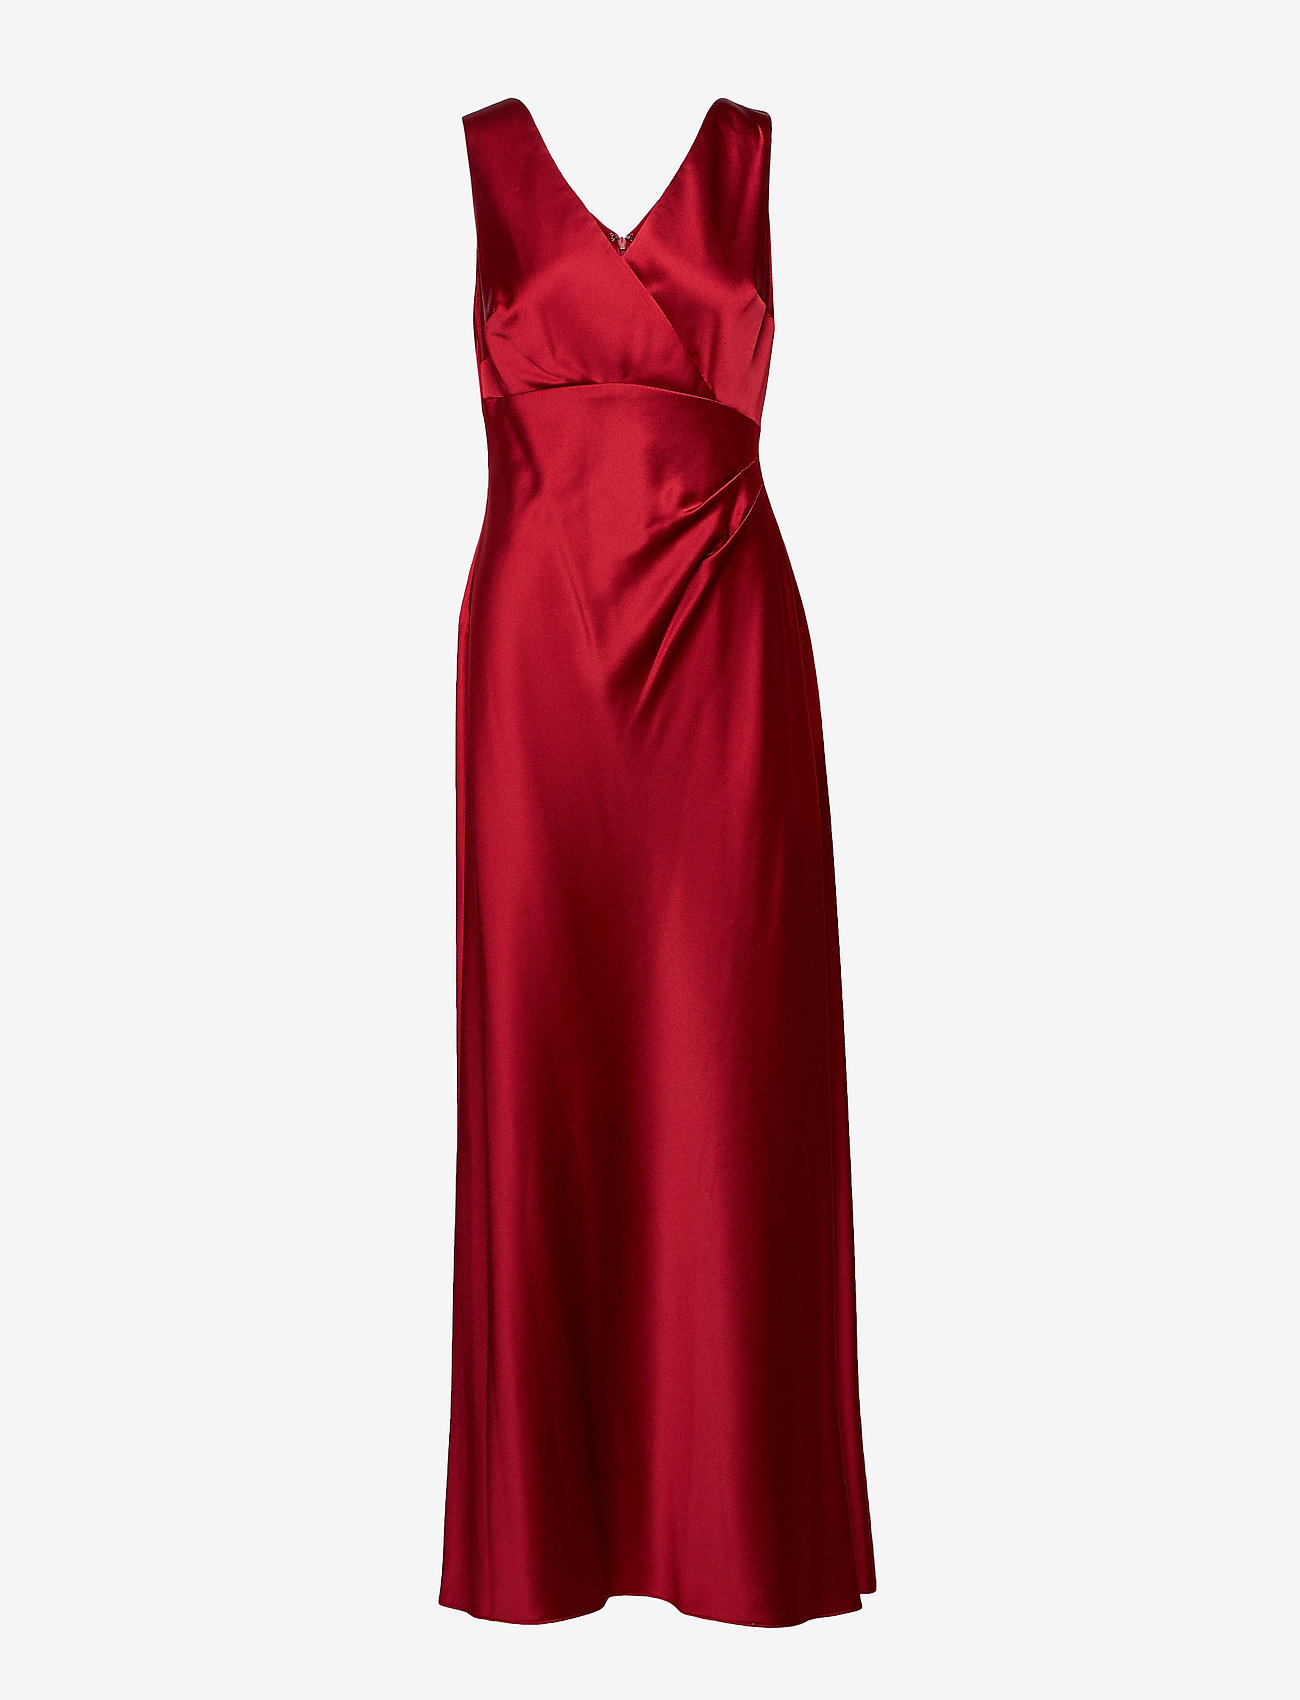 ralph lauren red dress - 61% OFF 